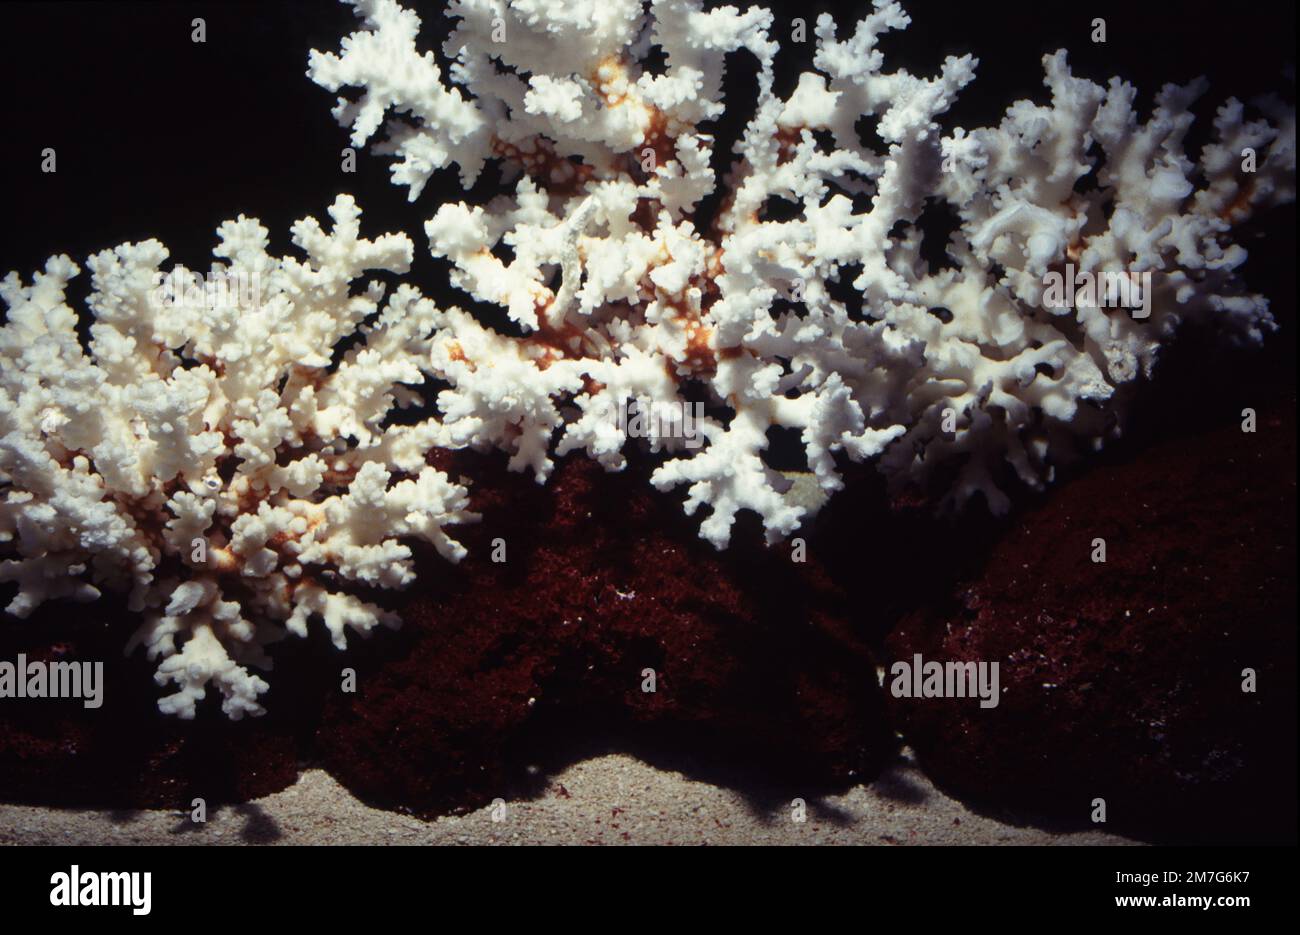 Orgelpfeifenkorallen (Tubipora musica) und Steinkorallenskelette für das Meeresaquarium ornement Stockfoto